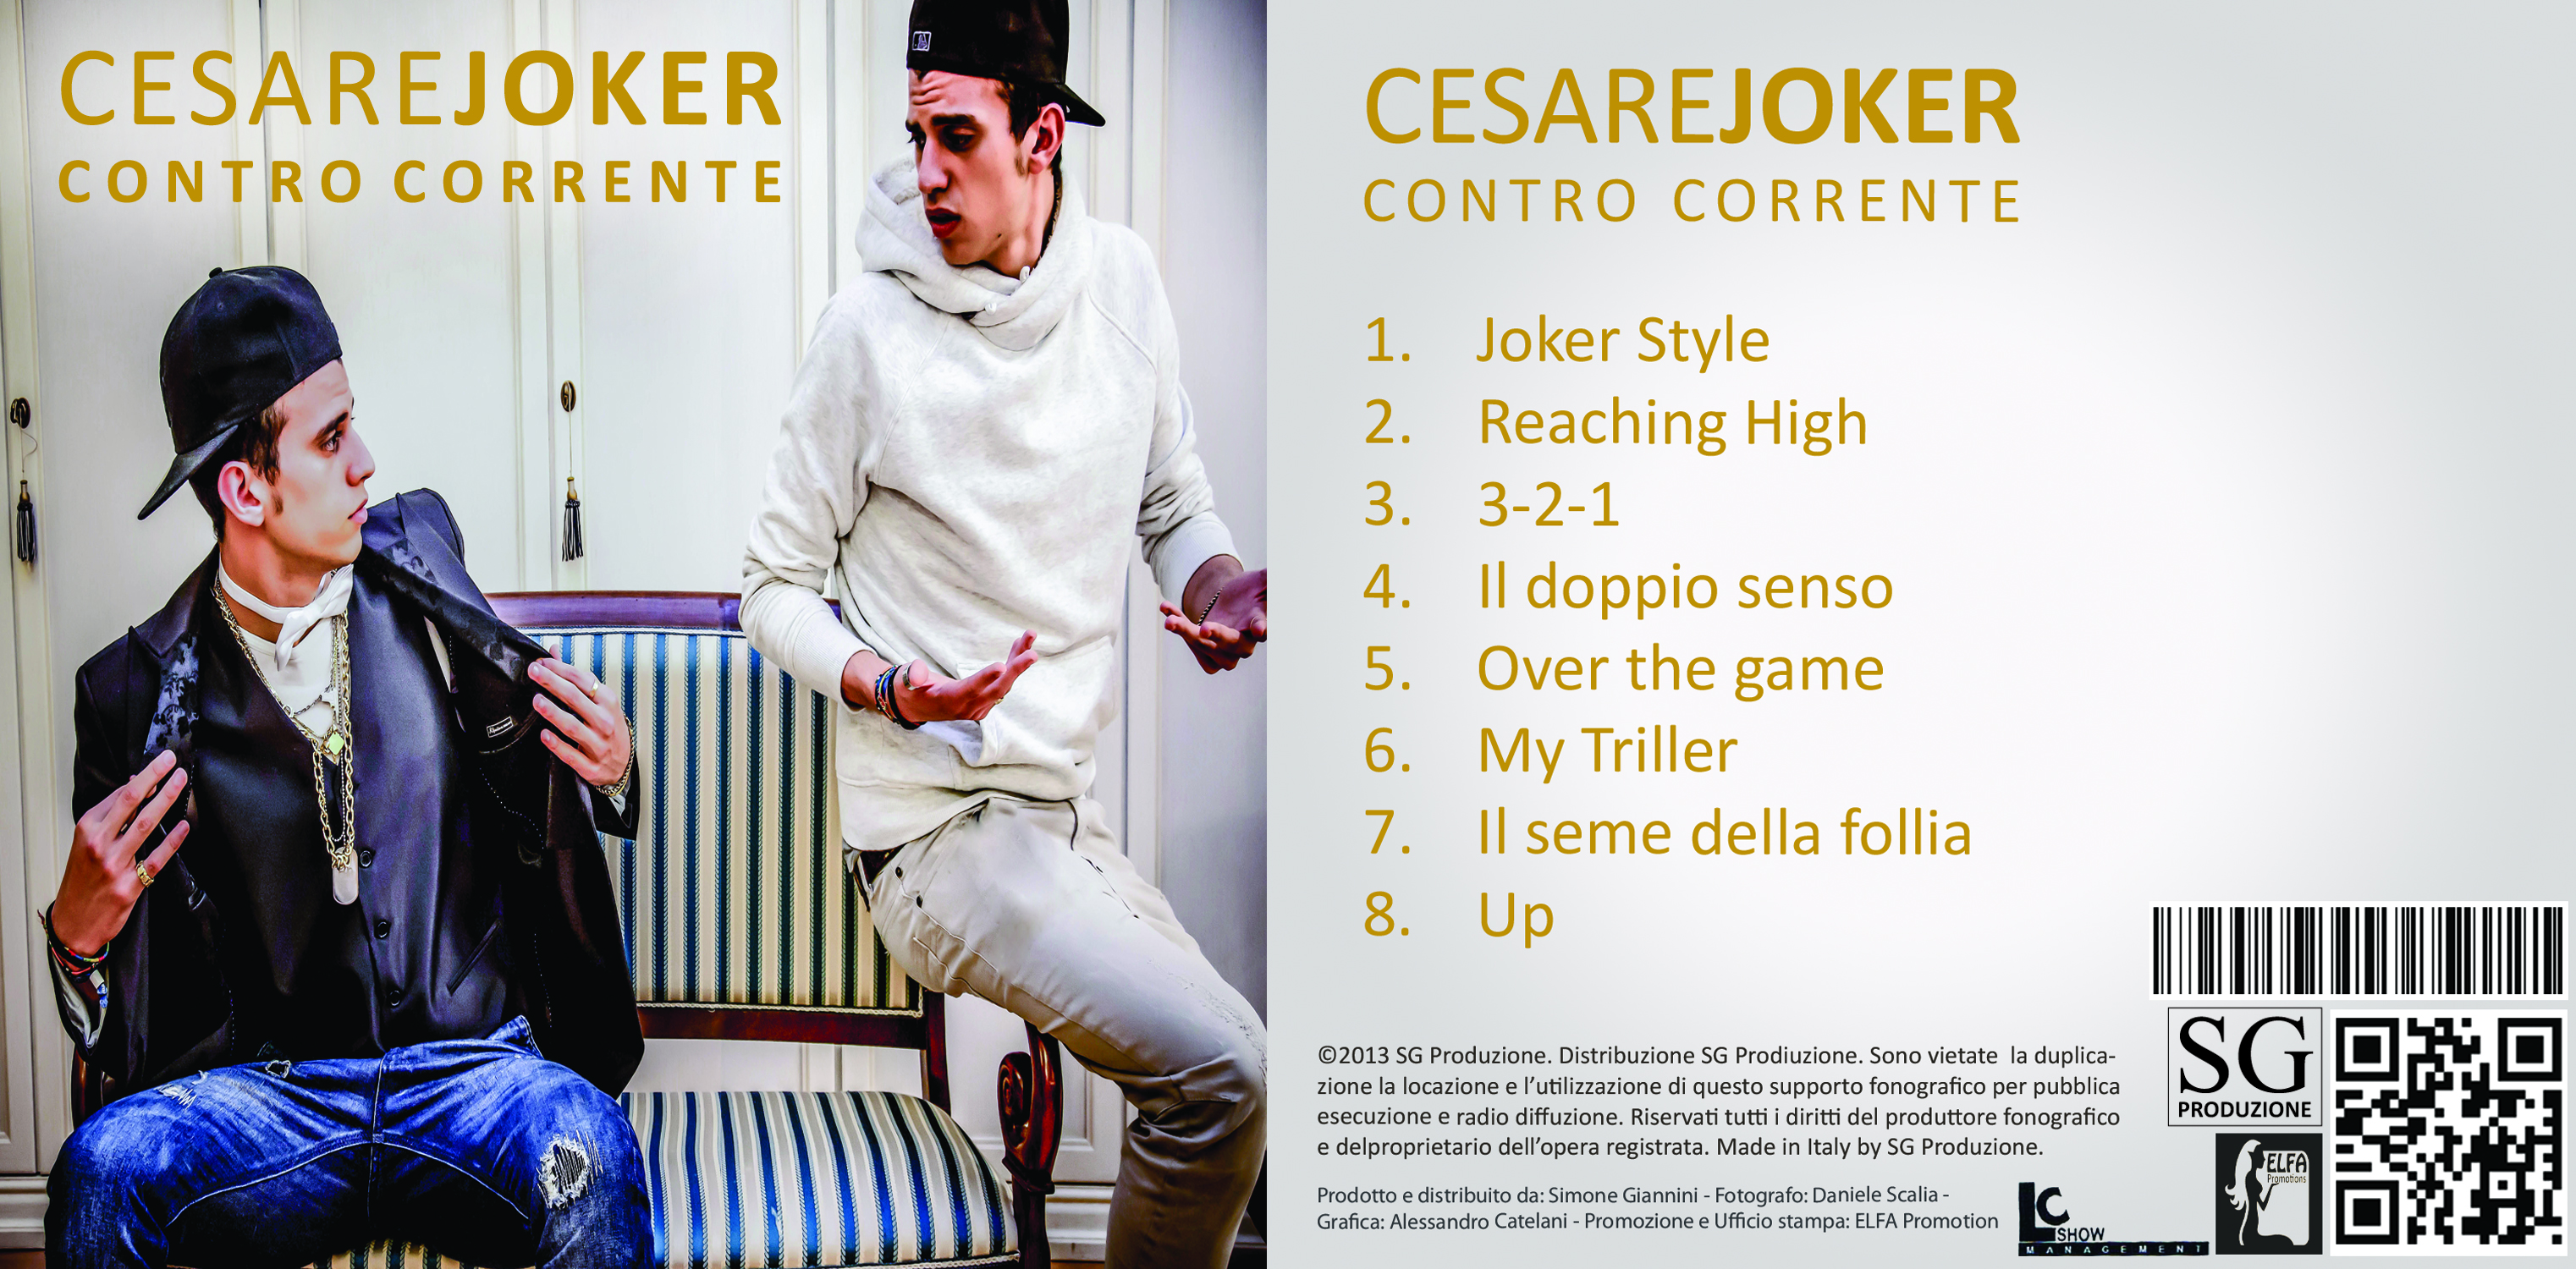 Cesare Cernigliaro in arte Joker, rapper siciliano, sta prendendo il volo. Dopo l’esperienza nel programma di “Amici”, il rapper, aggiunge un tassello fondamentale nella sua carriera artistica. Il giovane talento […]